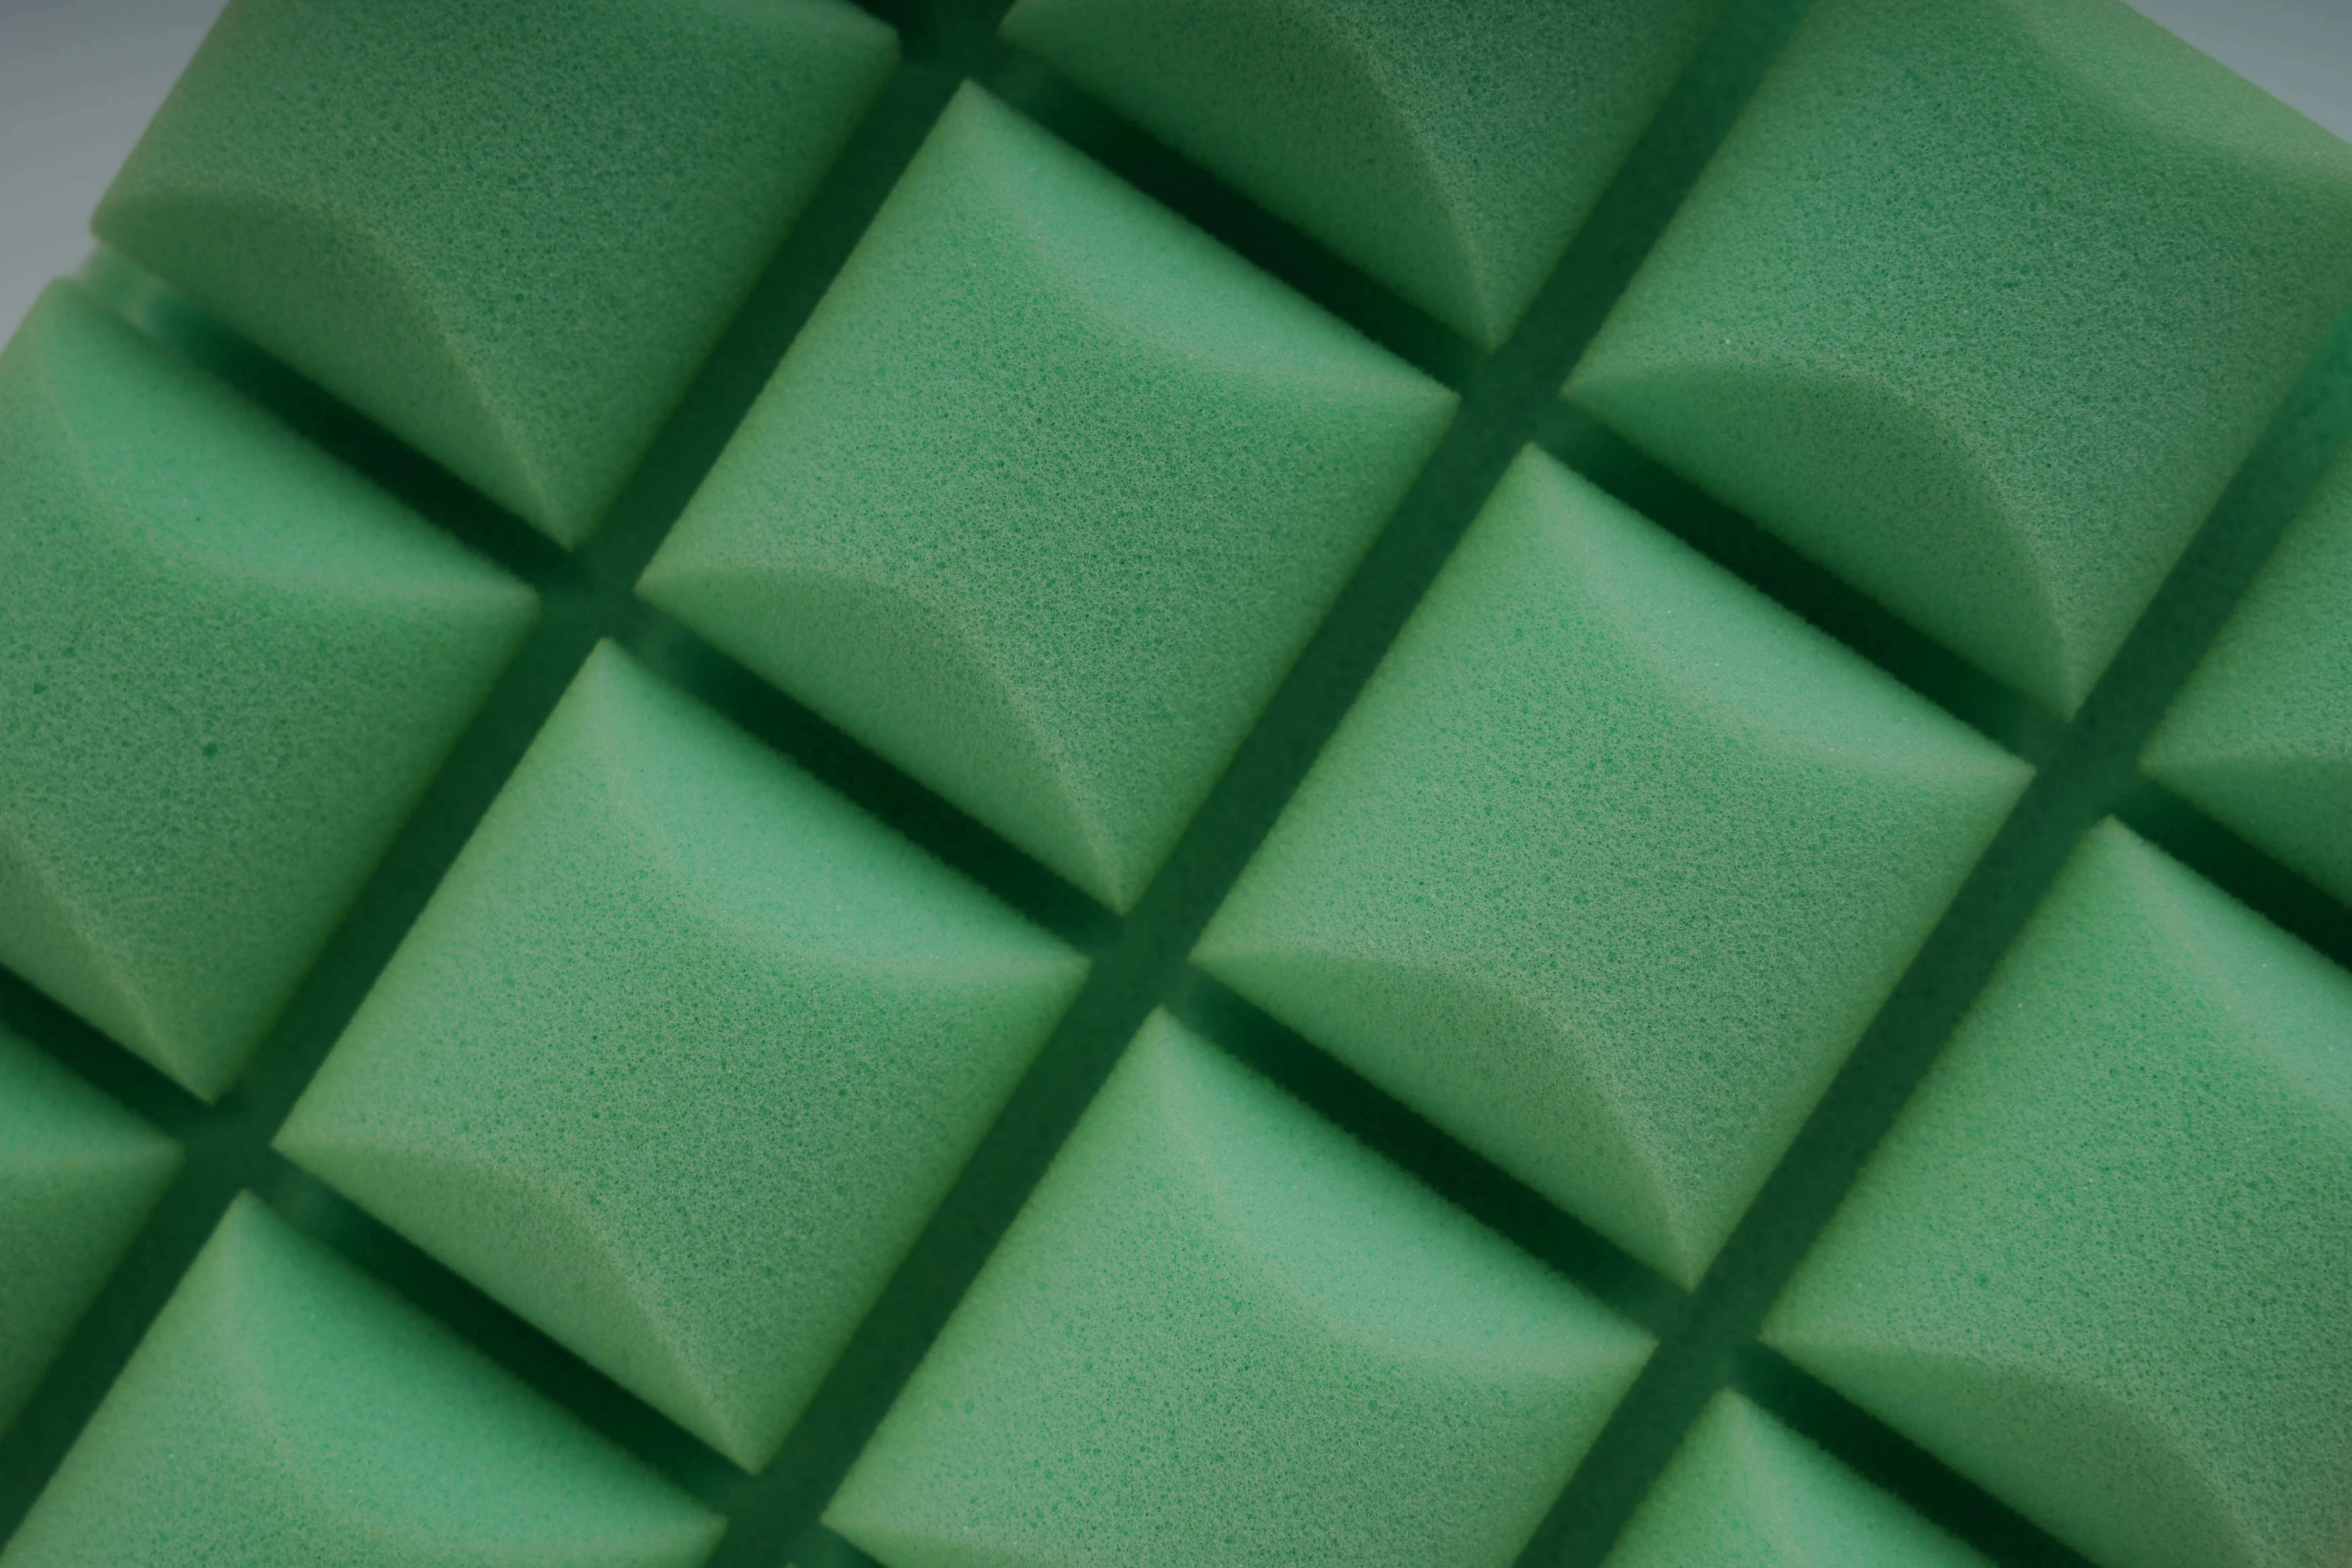 High Density Soundproof Foam Board Acoustic Panels Studio Acoustic Wall Panels Acoustic Foam Sponge